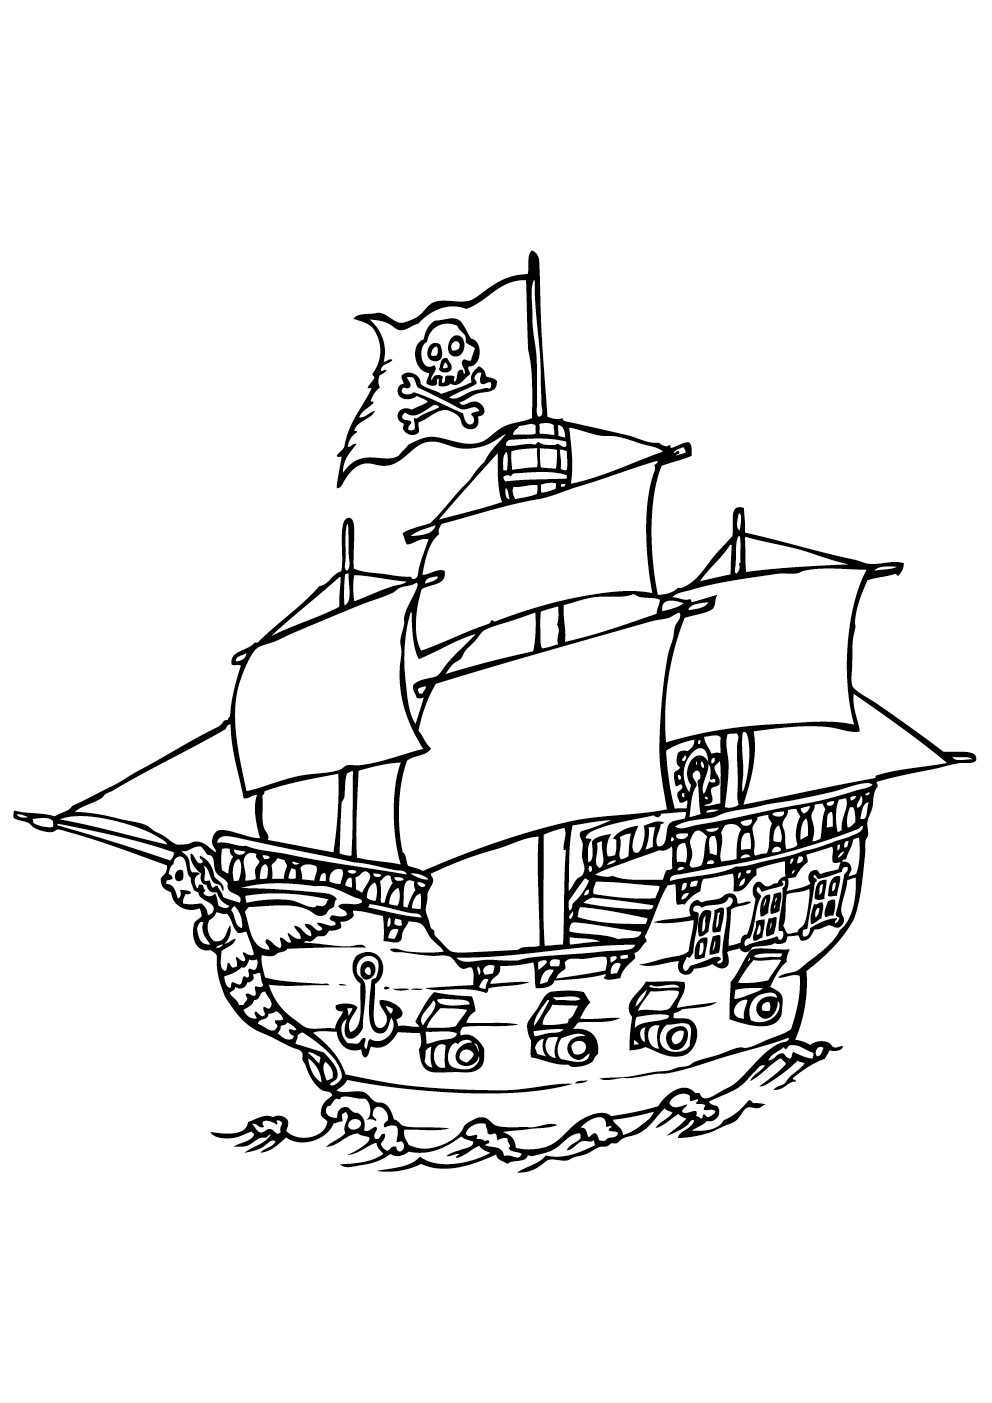 Pirate big boat